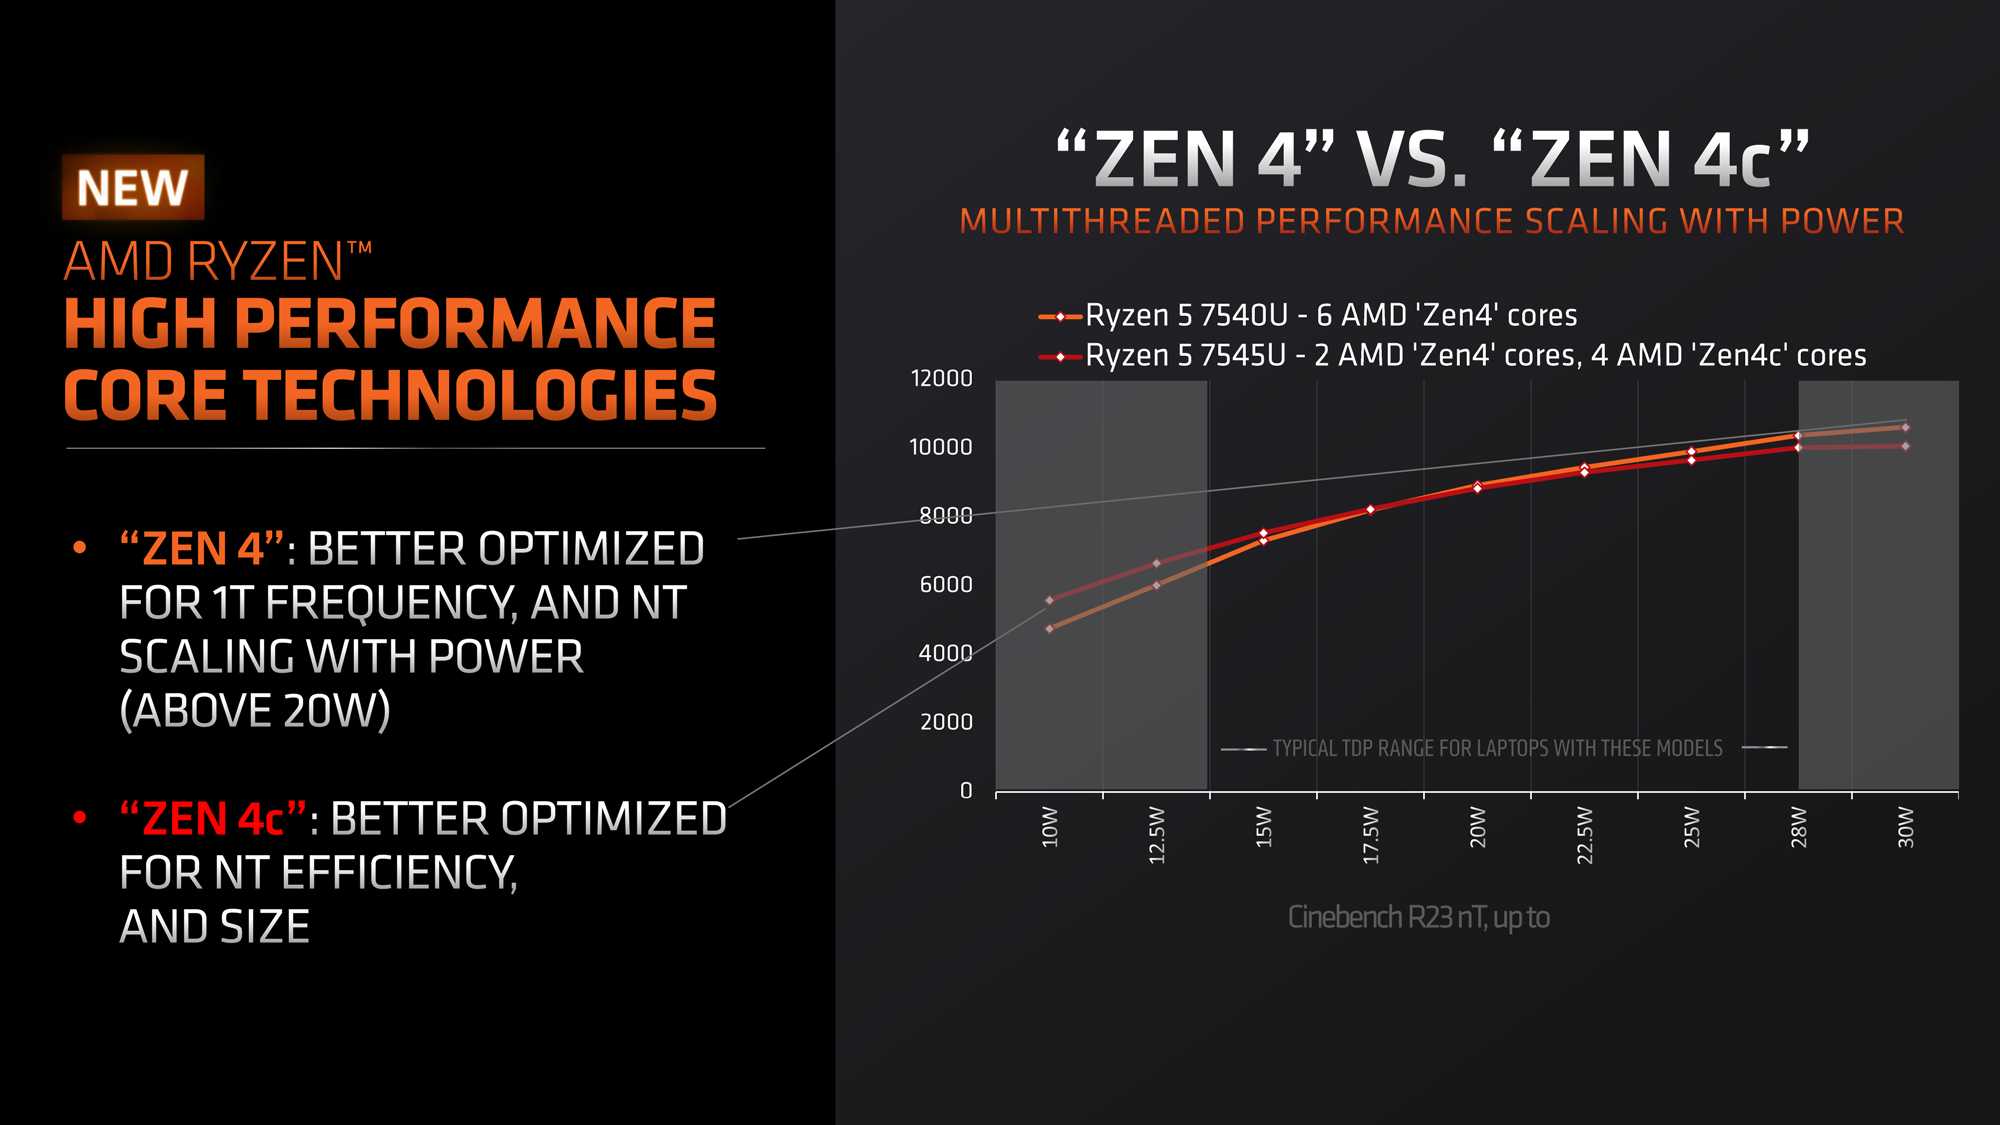 AMD-RYZEN-7040U-Zen4c-SMALL-PHOENIX.jpg